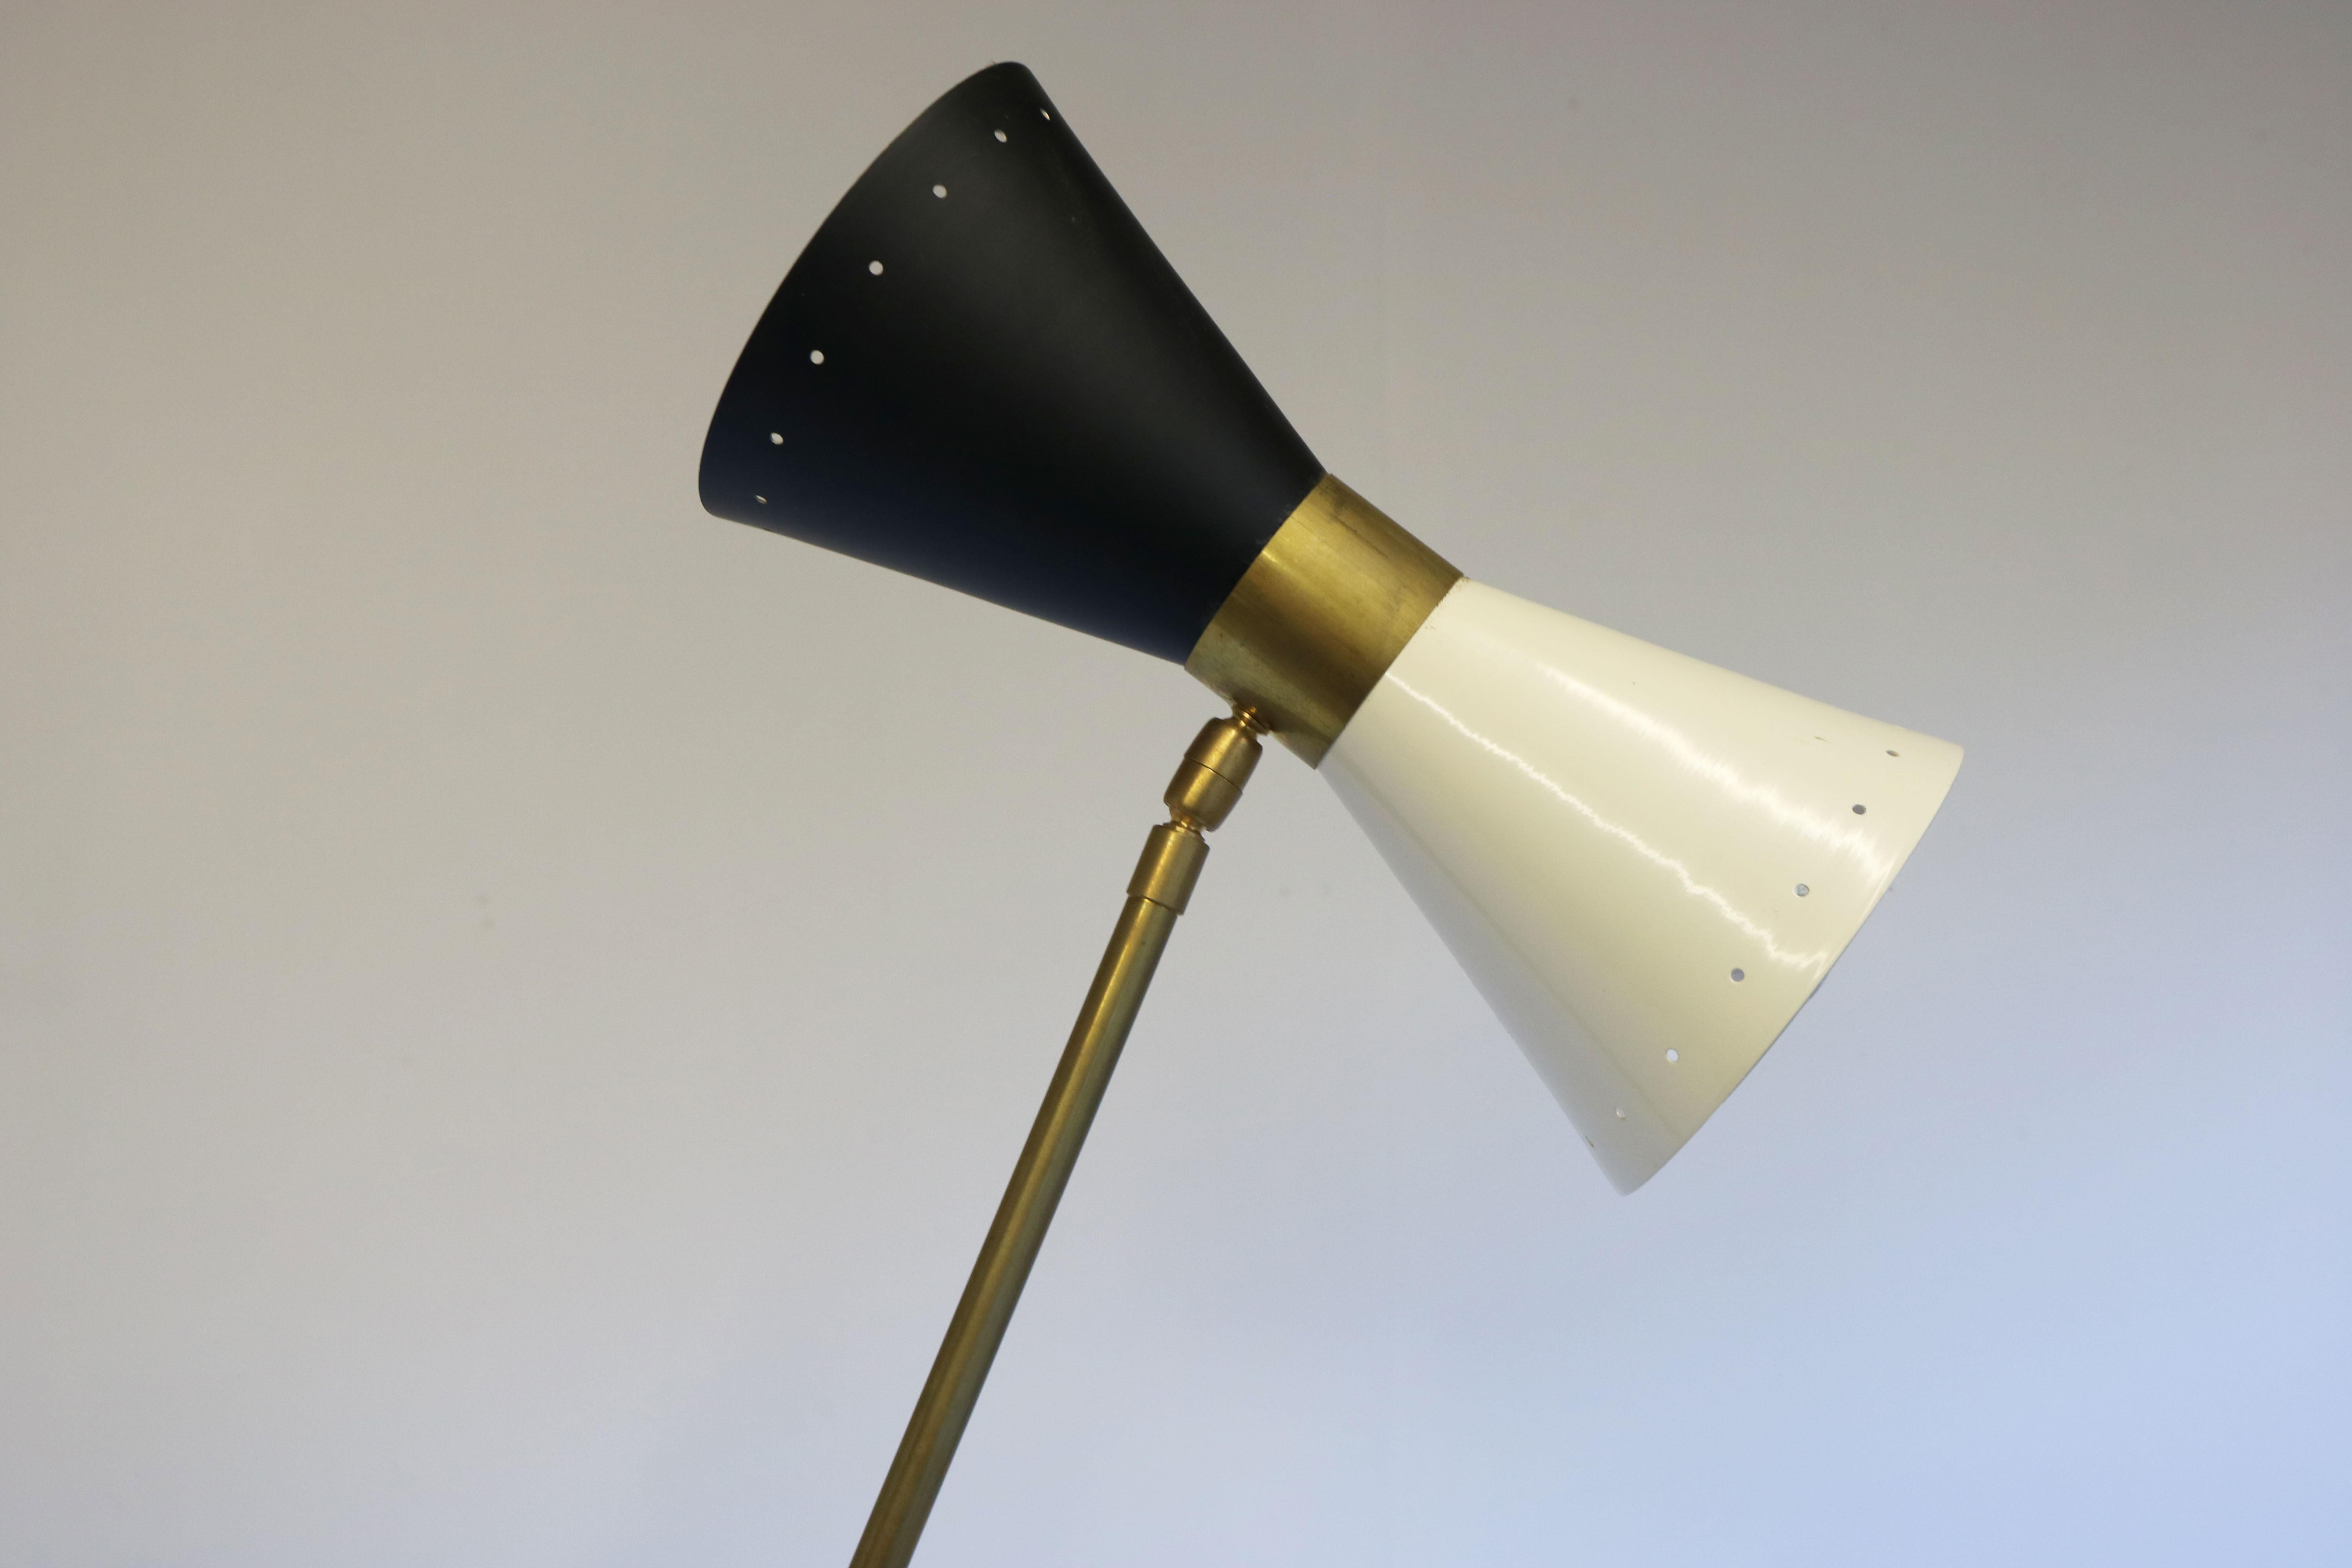 Mid-Century Modern Minimalist Italian Floor Lamp Stilnovo Style 1950 Brass Mid-Century Design Light For Sale